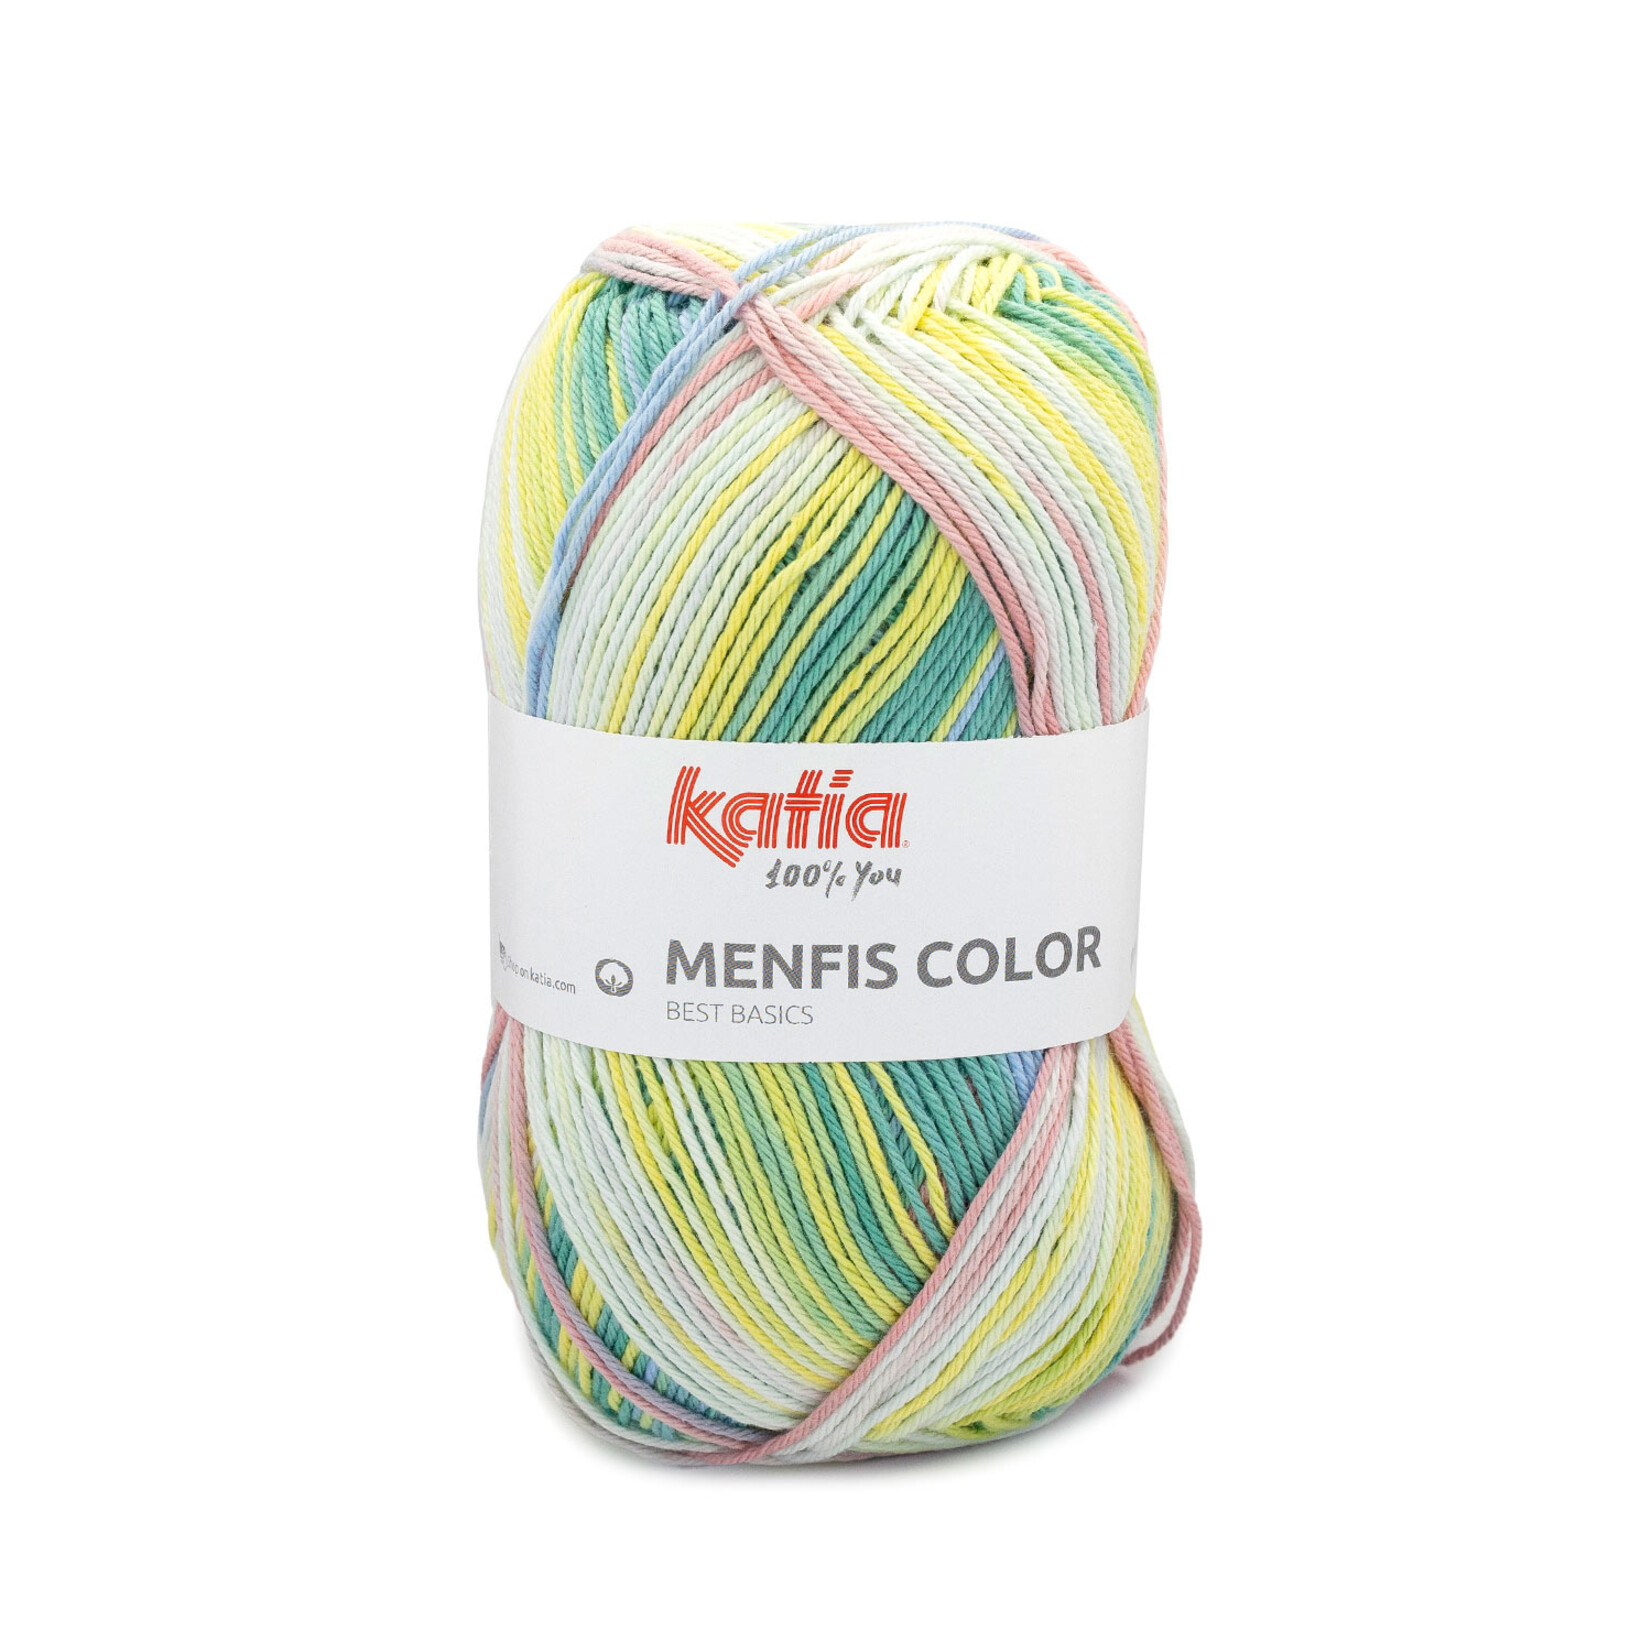 Katia Menfis Color 122 Koraal-Groen-Geel-Blauw